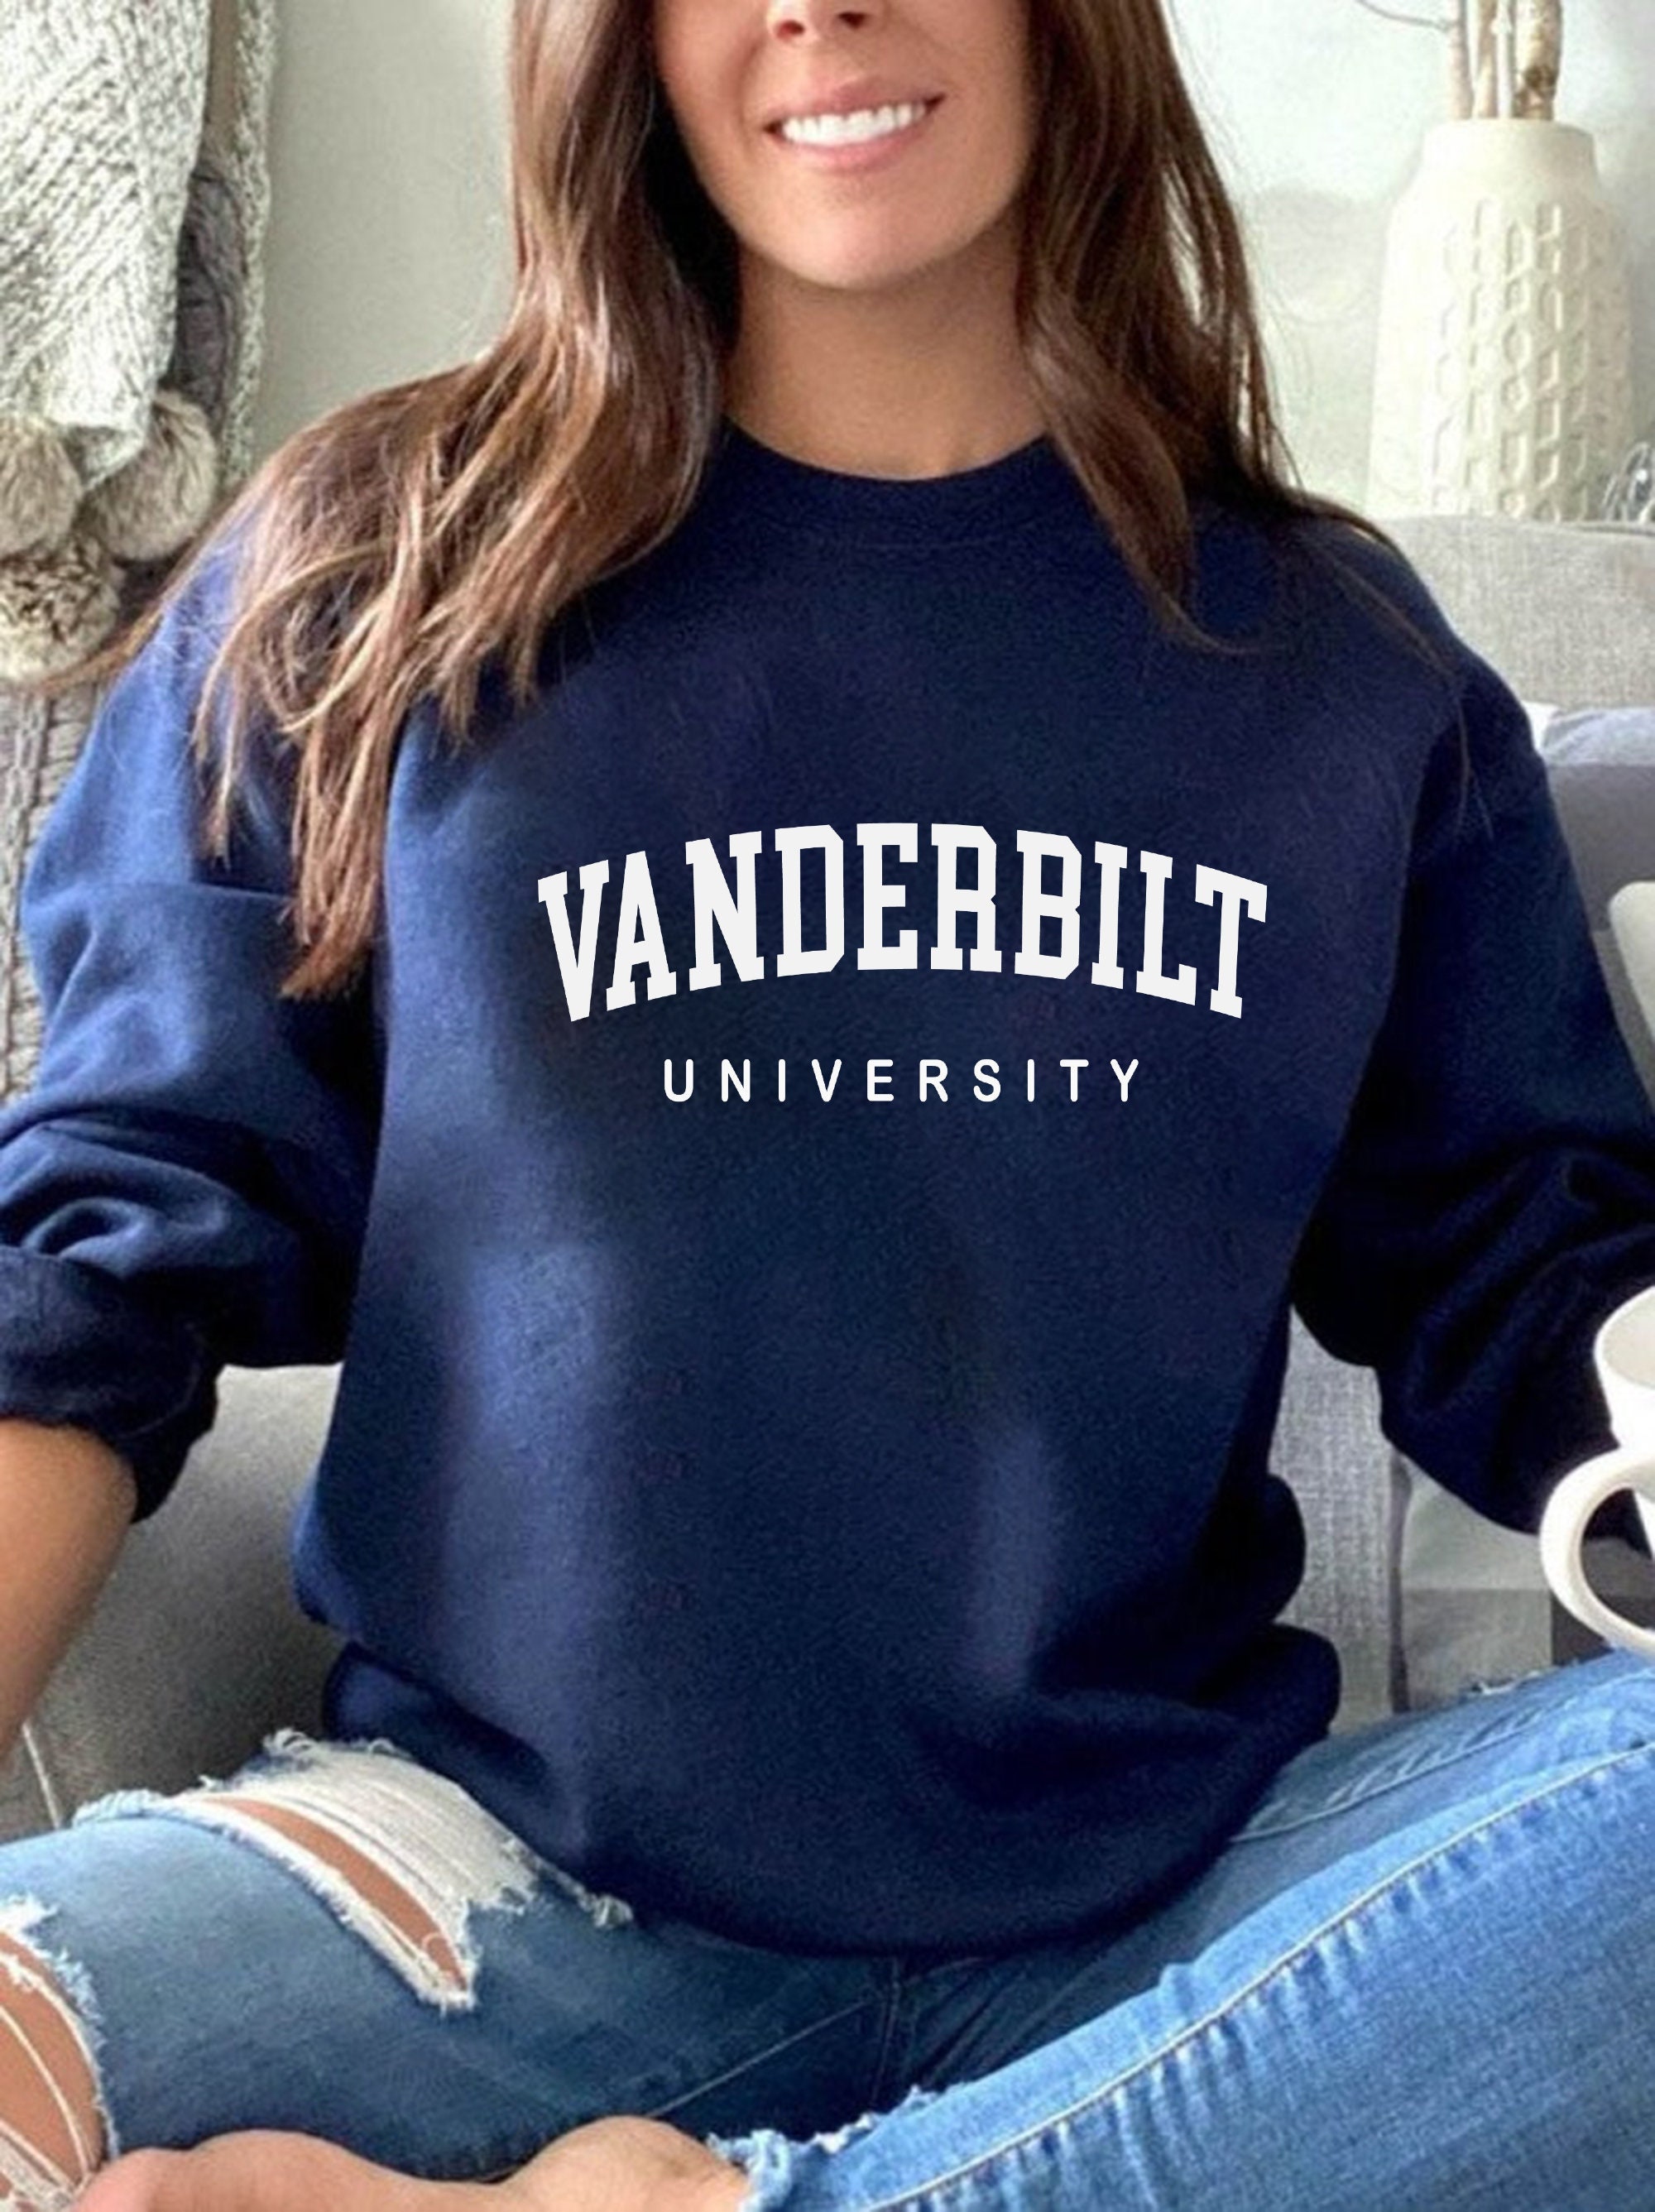 Vanderbilt Sweatshirt Vanderbilt University Vanderbilt picture image